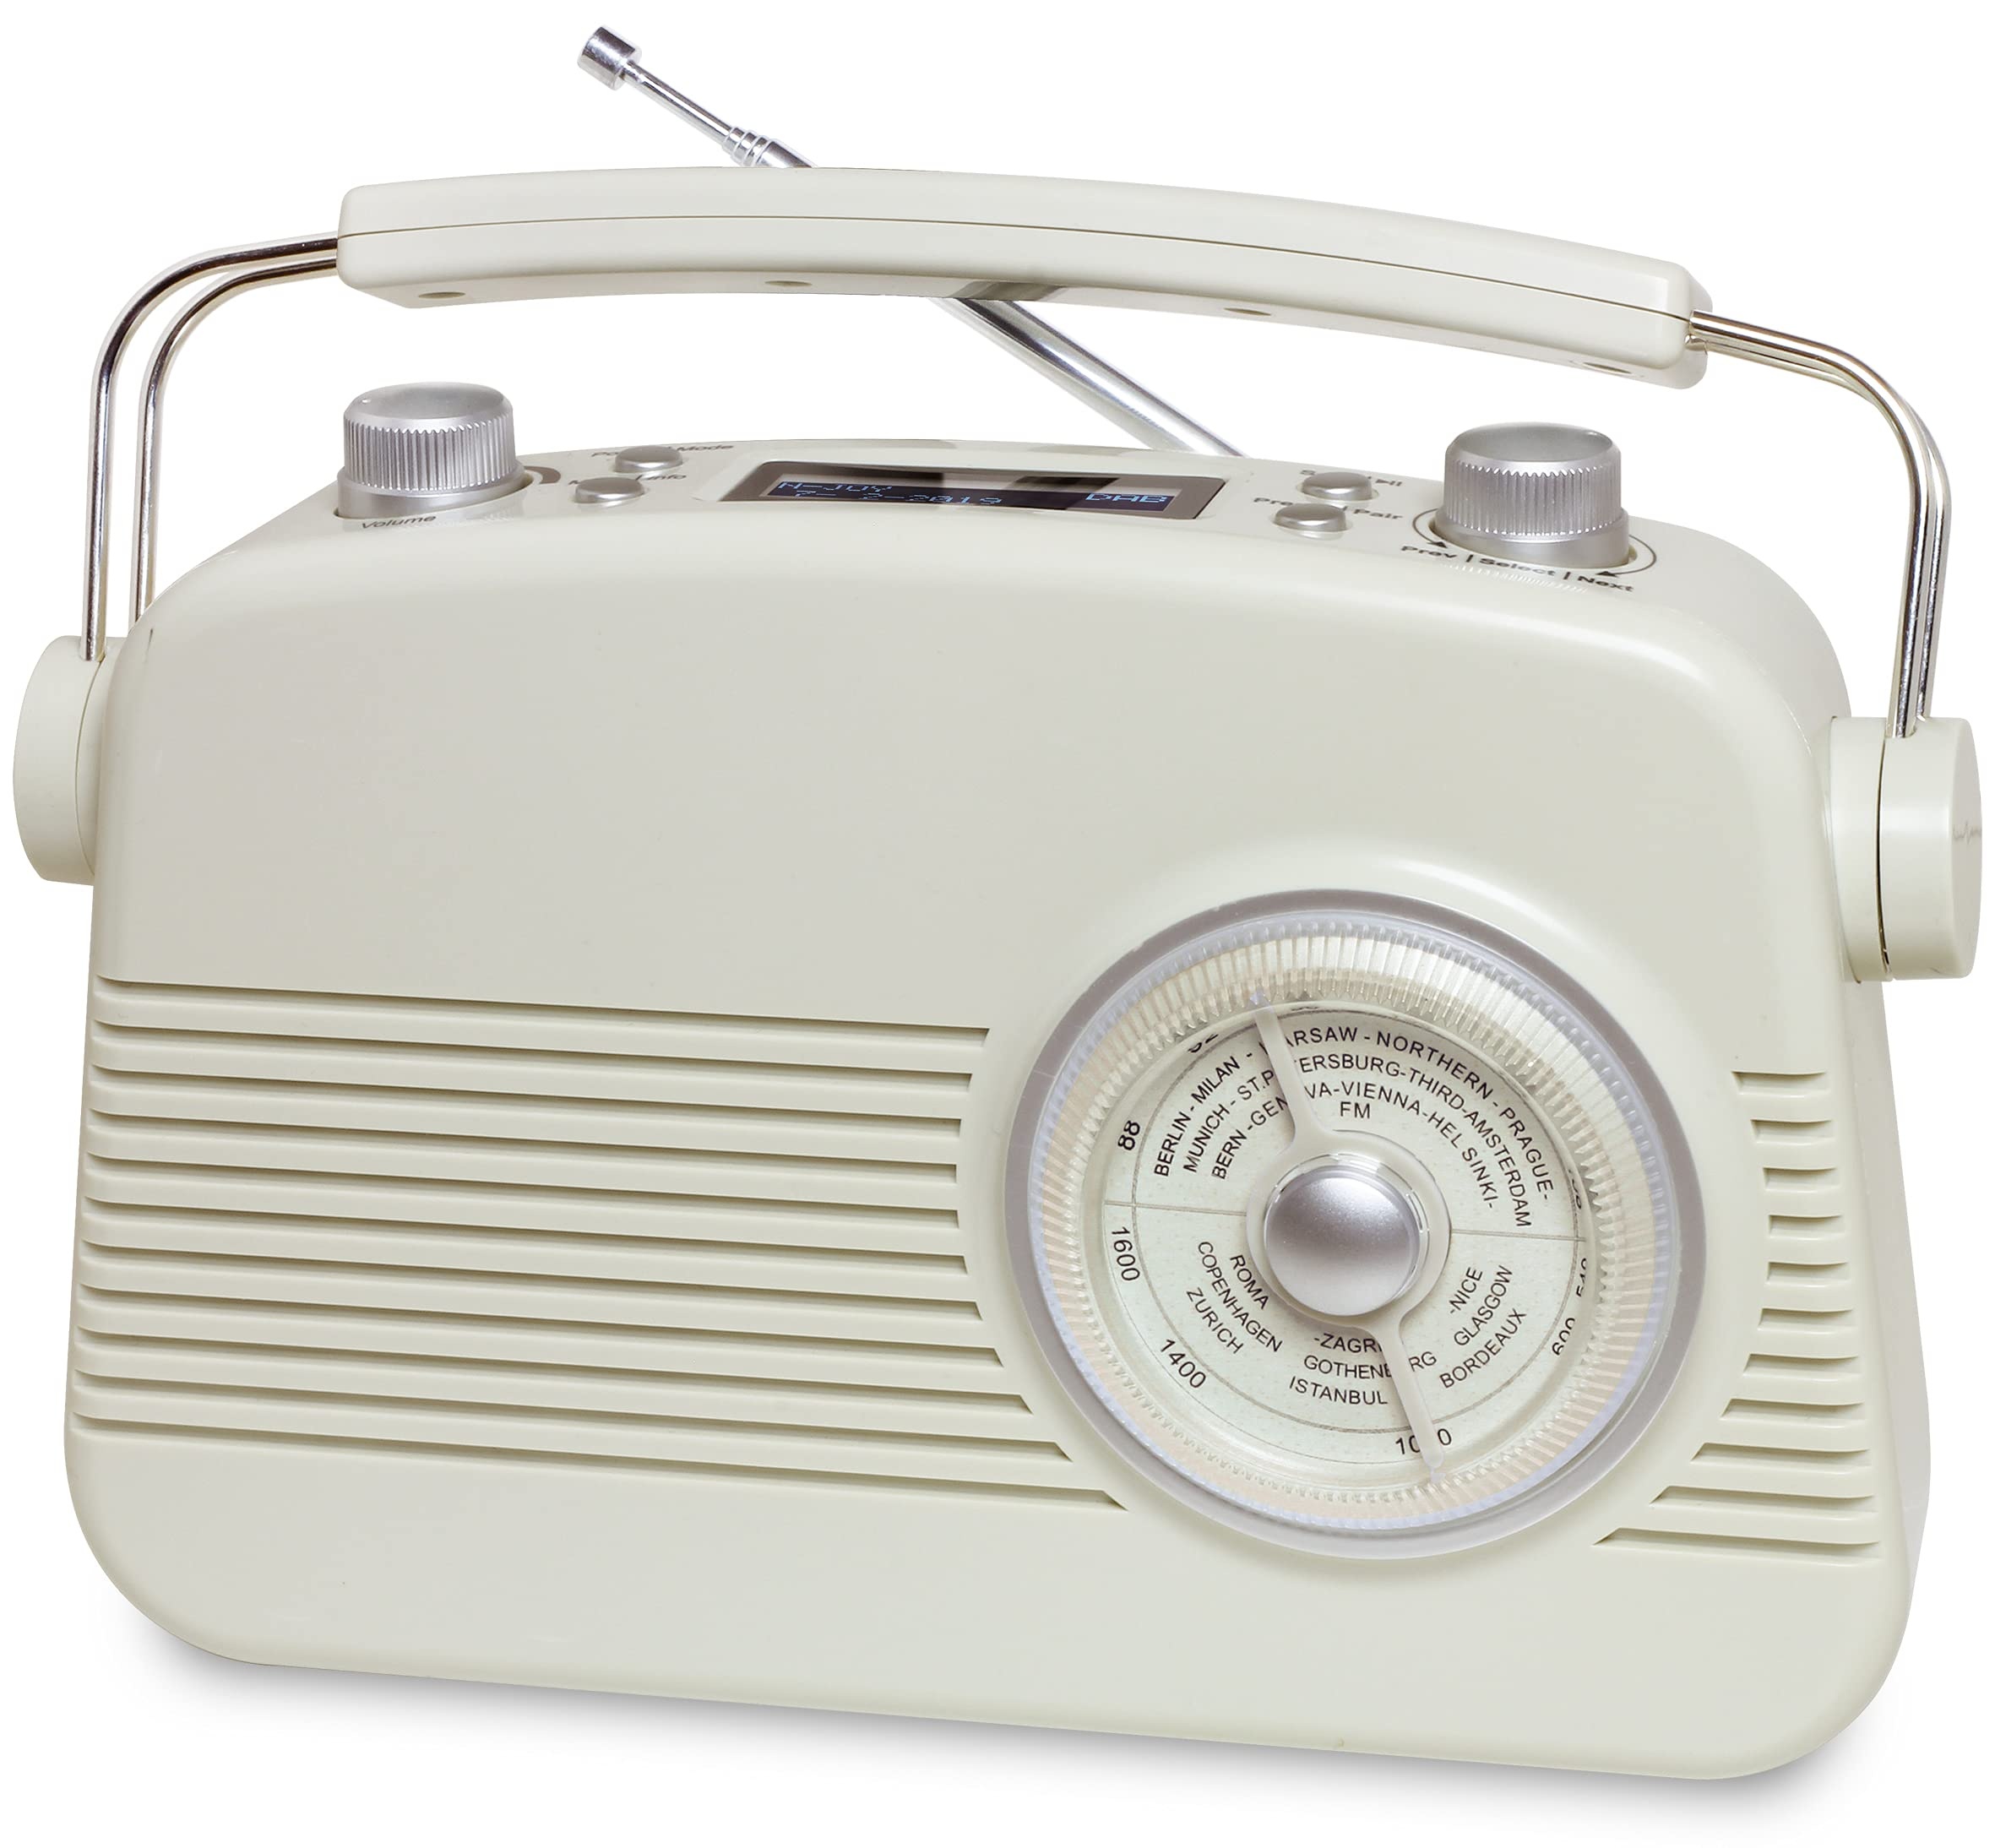 TERRIS Vintage Radio, tragbares Retro Radio mit modernster Smartphone Konnektivität inkl. Bluetooth, AUX-IN & DAB+, beige